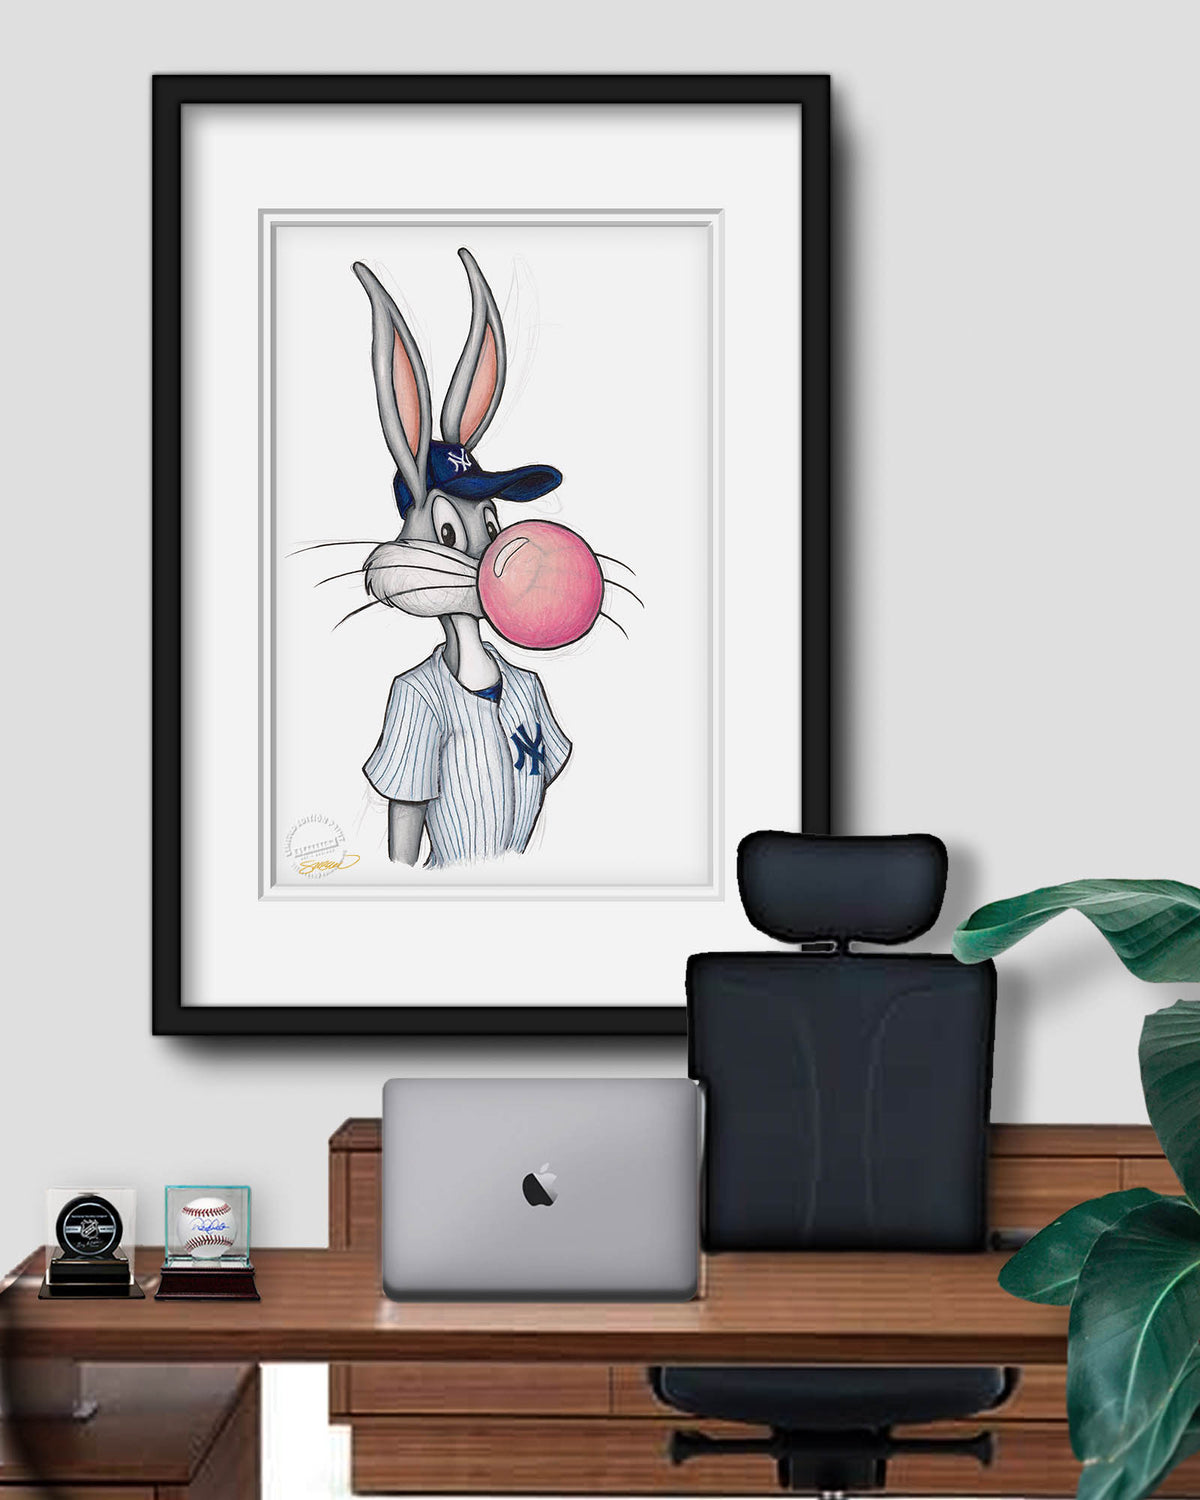 Yankees Bugs Bunny  Looney tunes cartoons, Looney tunes, Favorite